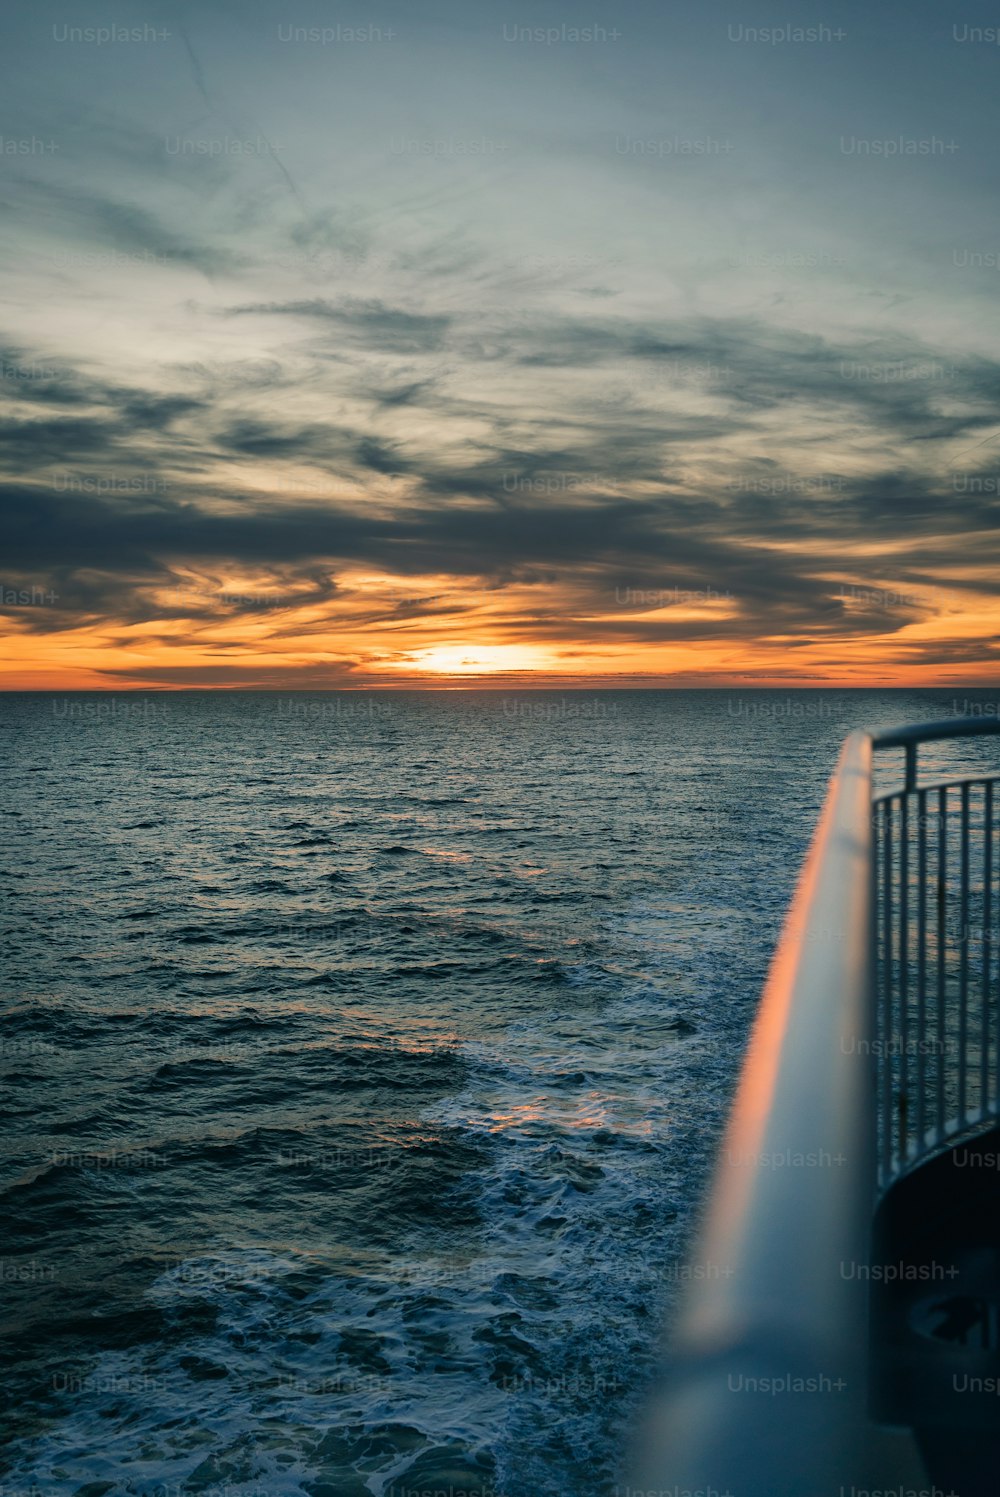 Il sole sta tramontando sull'oceano visto da una barca